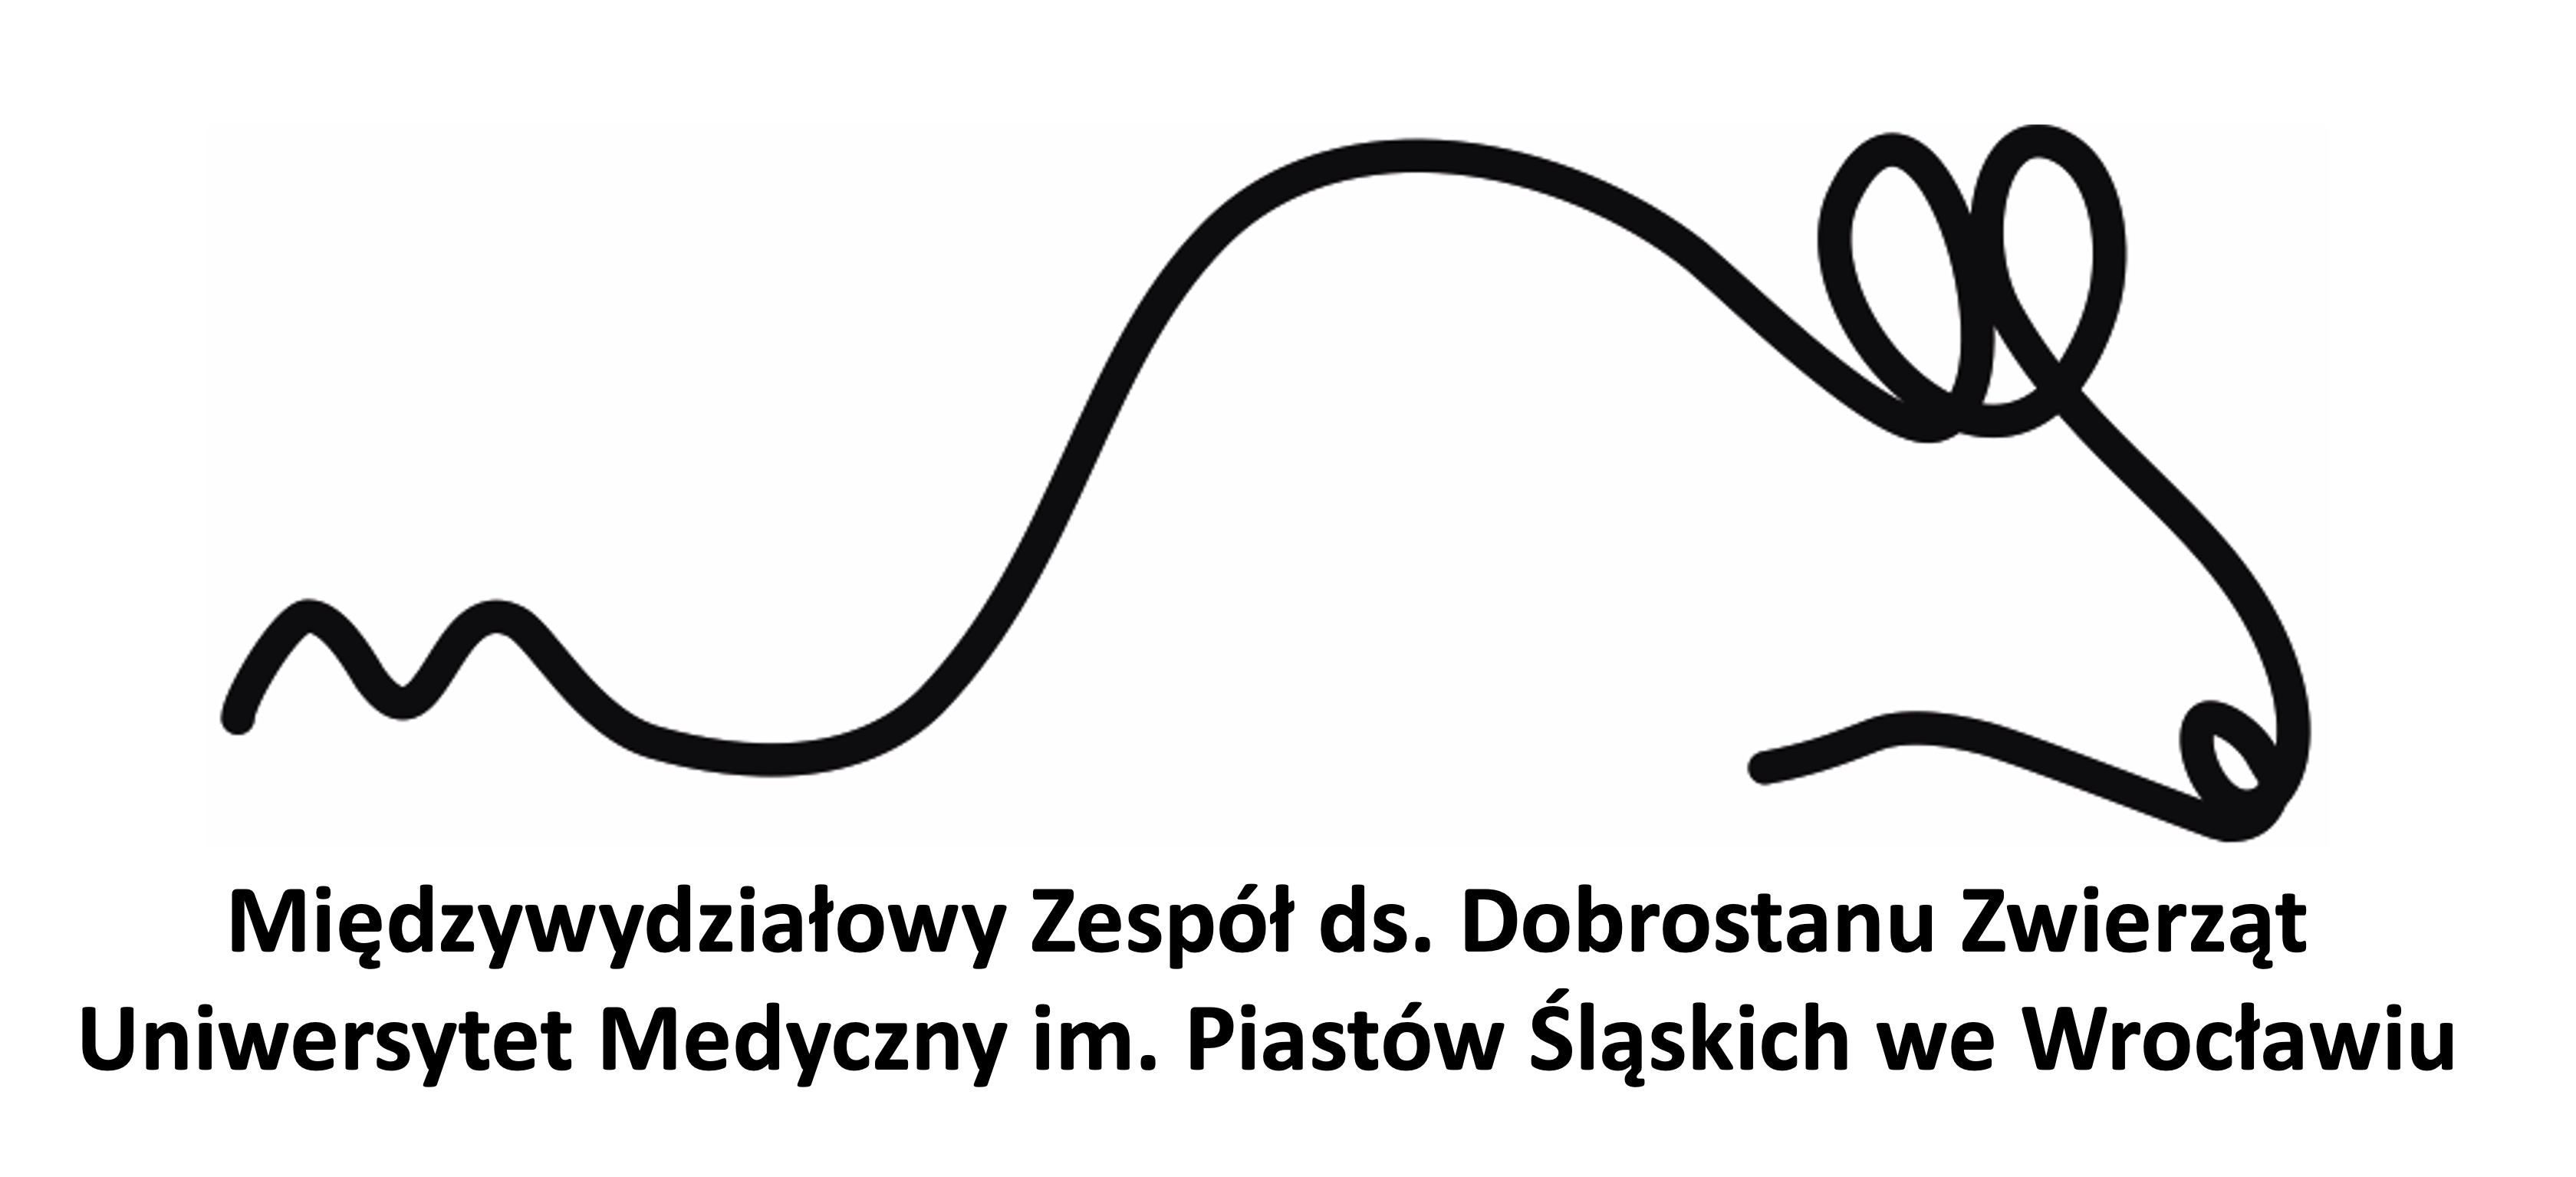 Logo Międzywydziałowego Zespołu ds. Dobrostanu Zwierząt - symboliczne przedstawienie myszy z podpisem poniżej